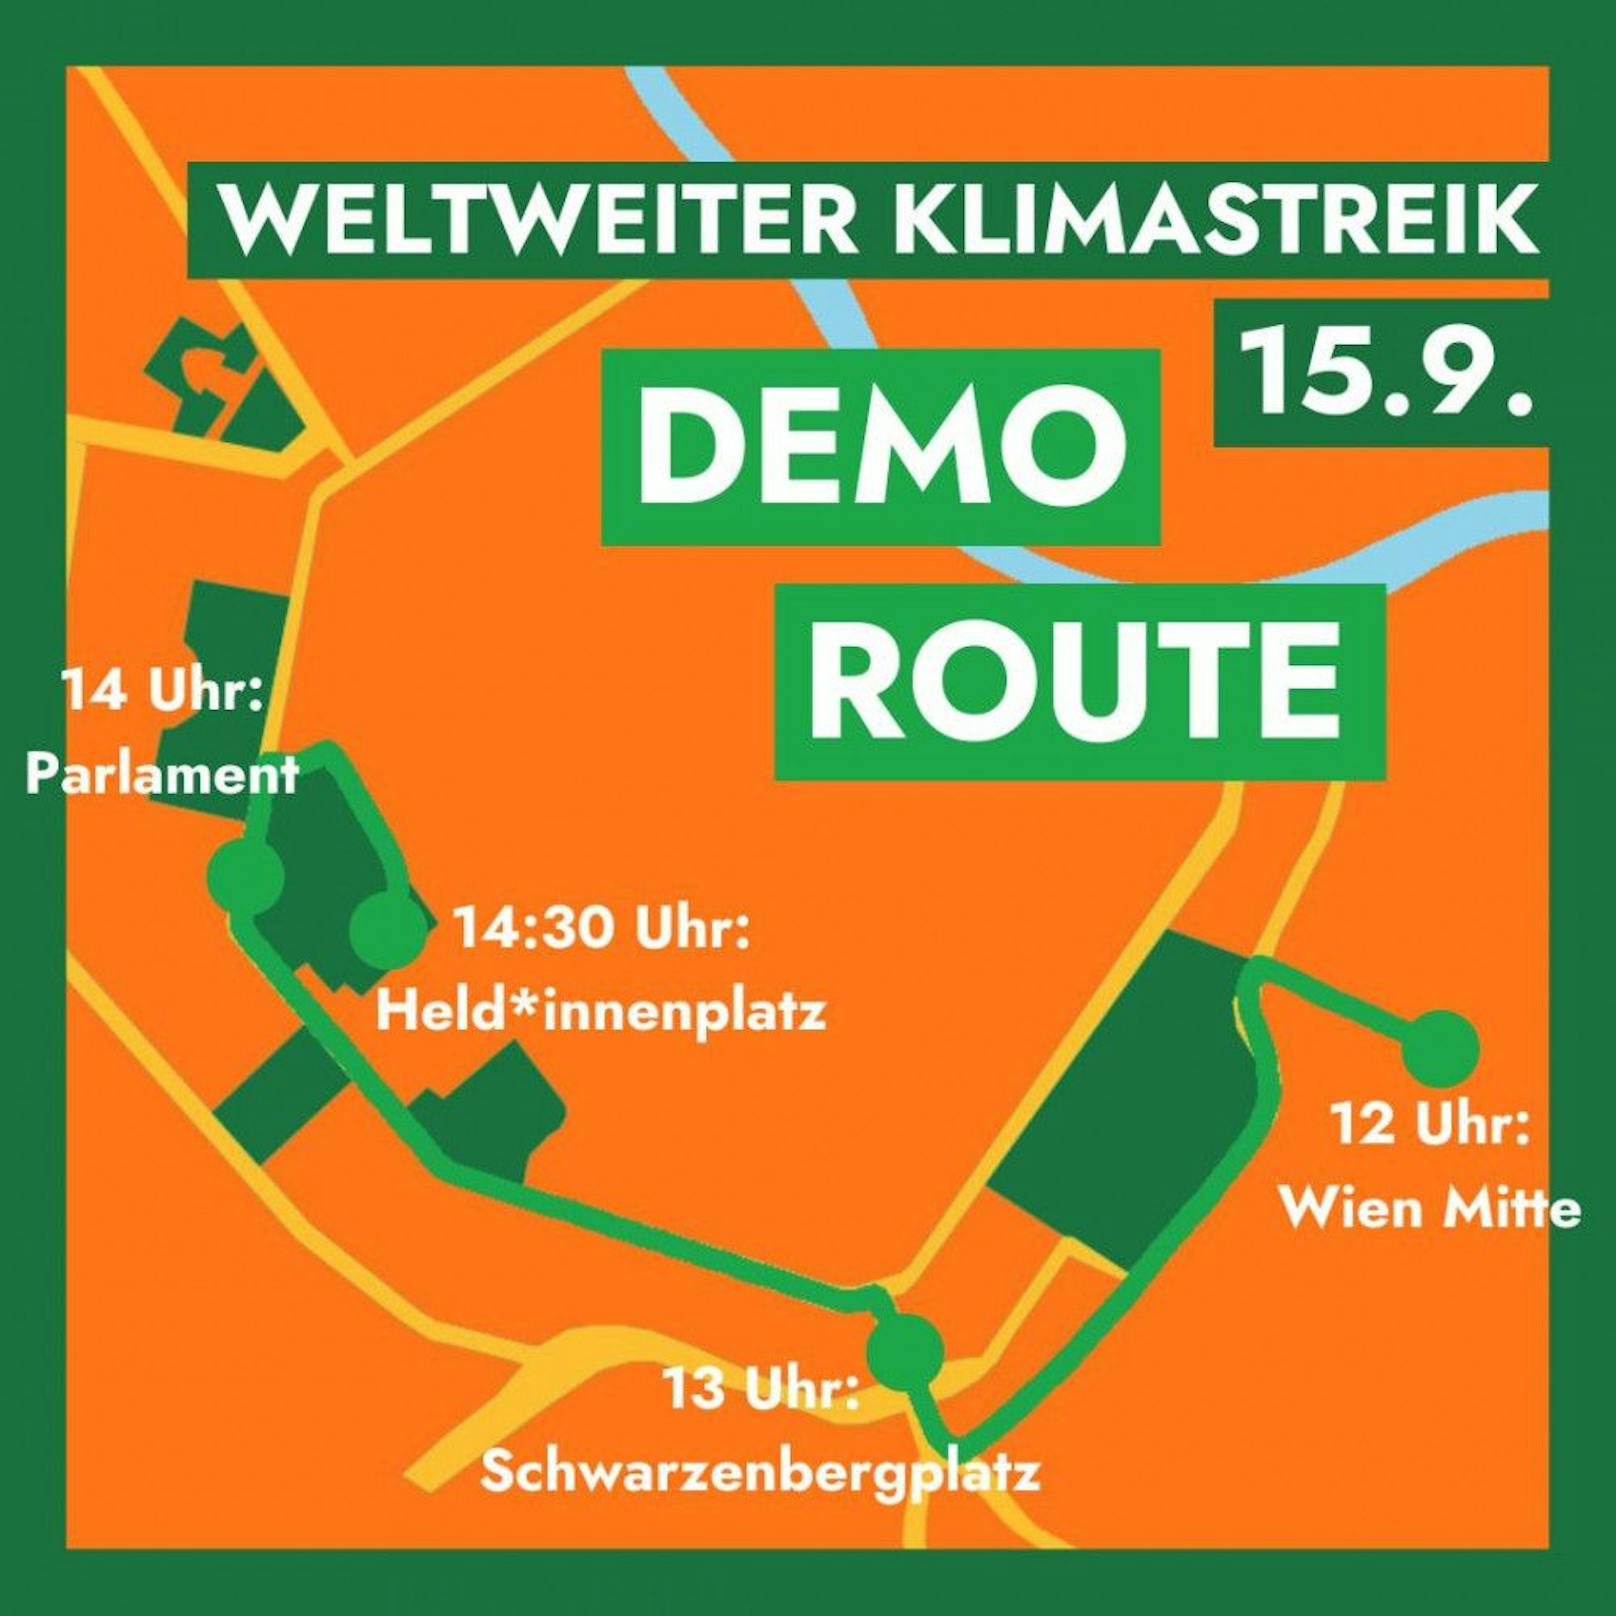 Die Route der Klima-Demo in Wien